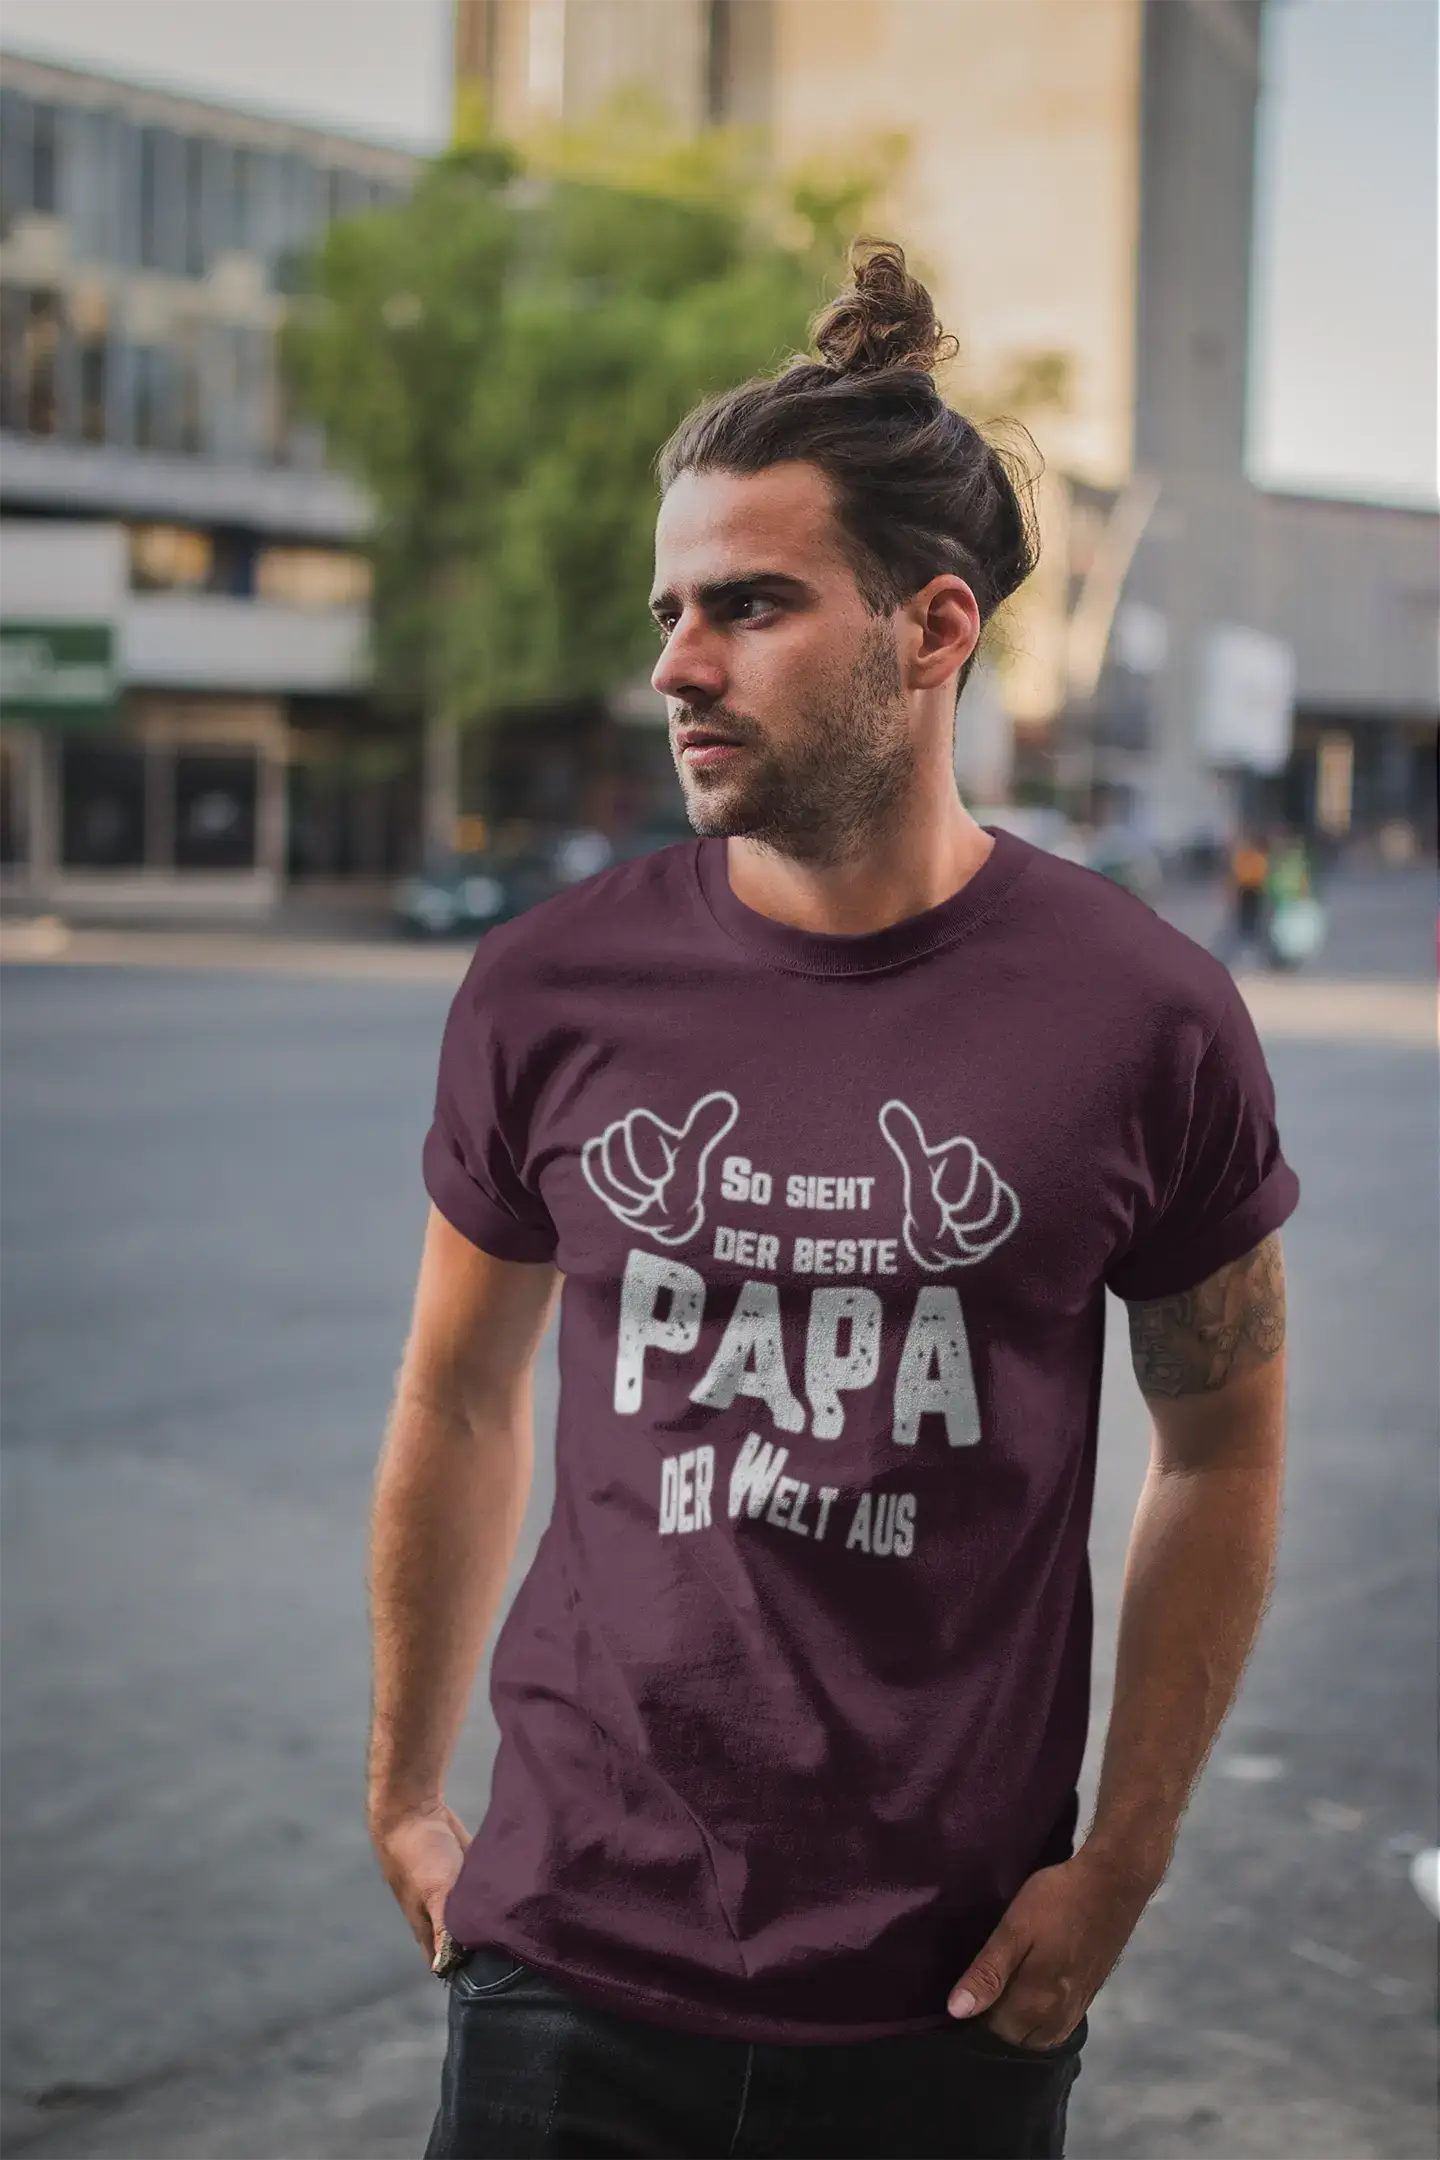 Men's Graphic T-Shirt So Sieht Der Beste Papa Der Welt Aus Gift Idea